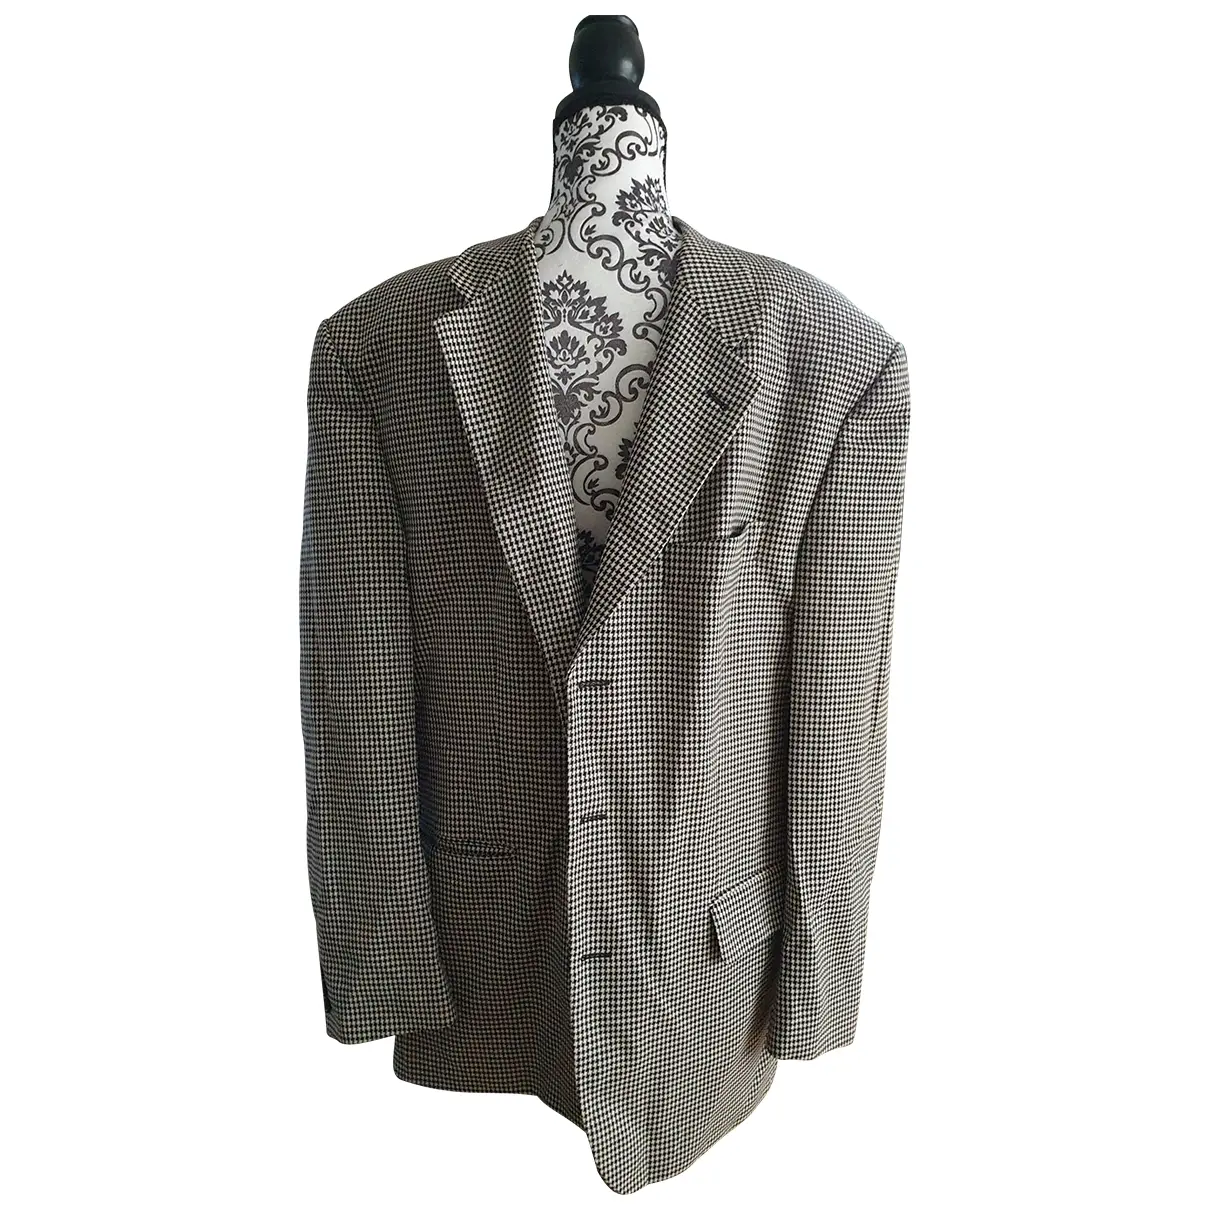 Wool jacket Pierre Balmain - Vintage